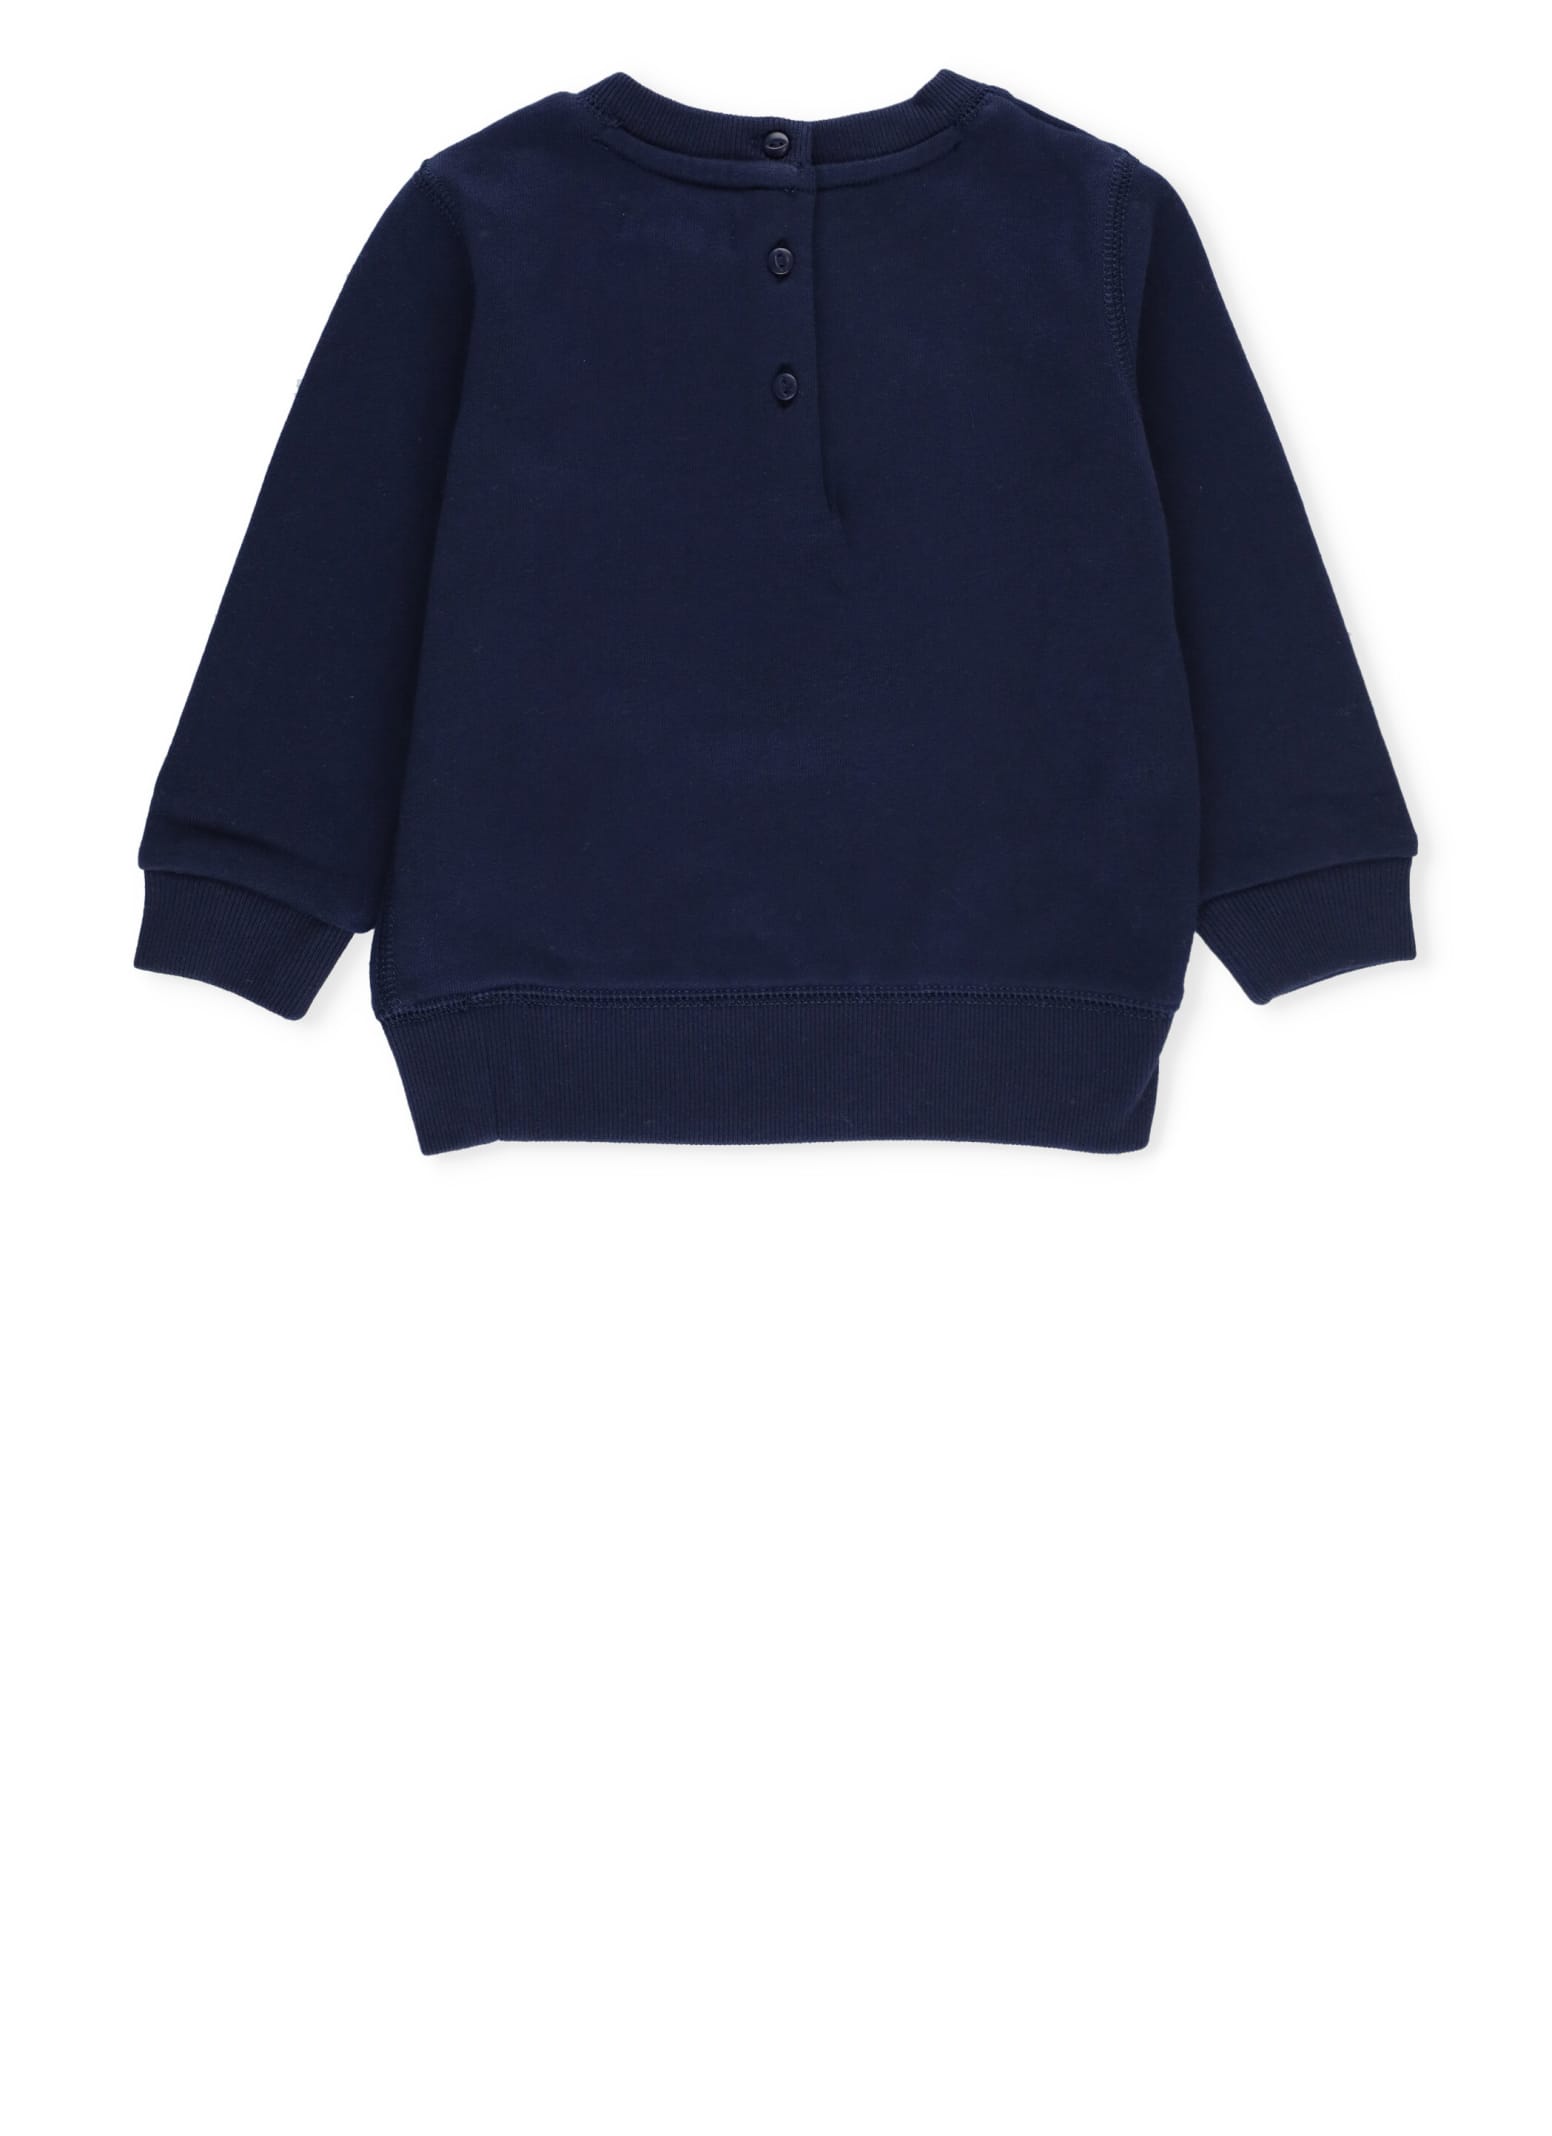 Shop Ralph Lauren Polo Bear Sweatshirt In Blue